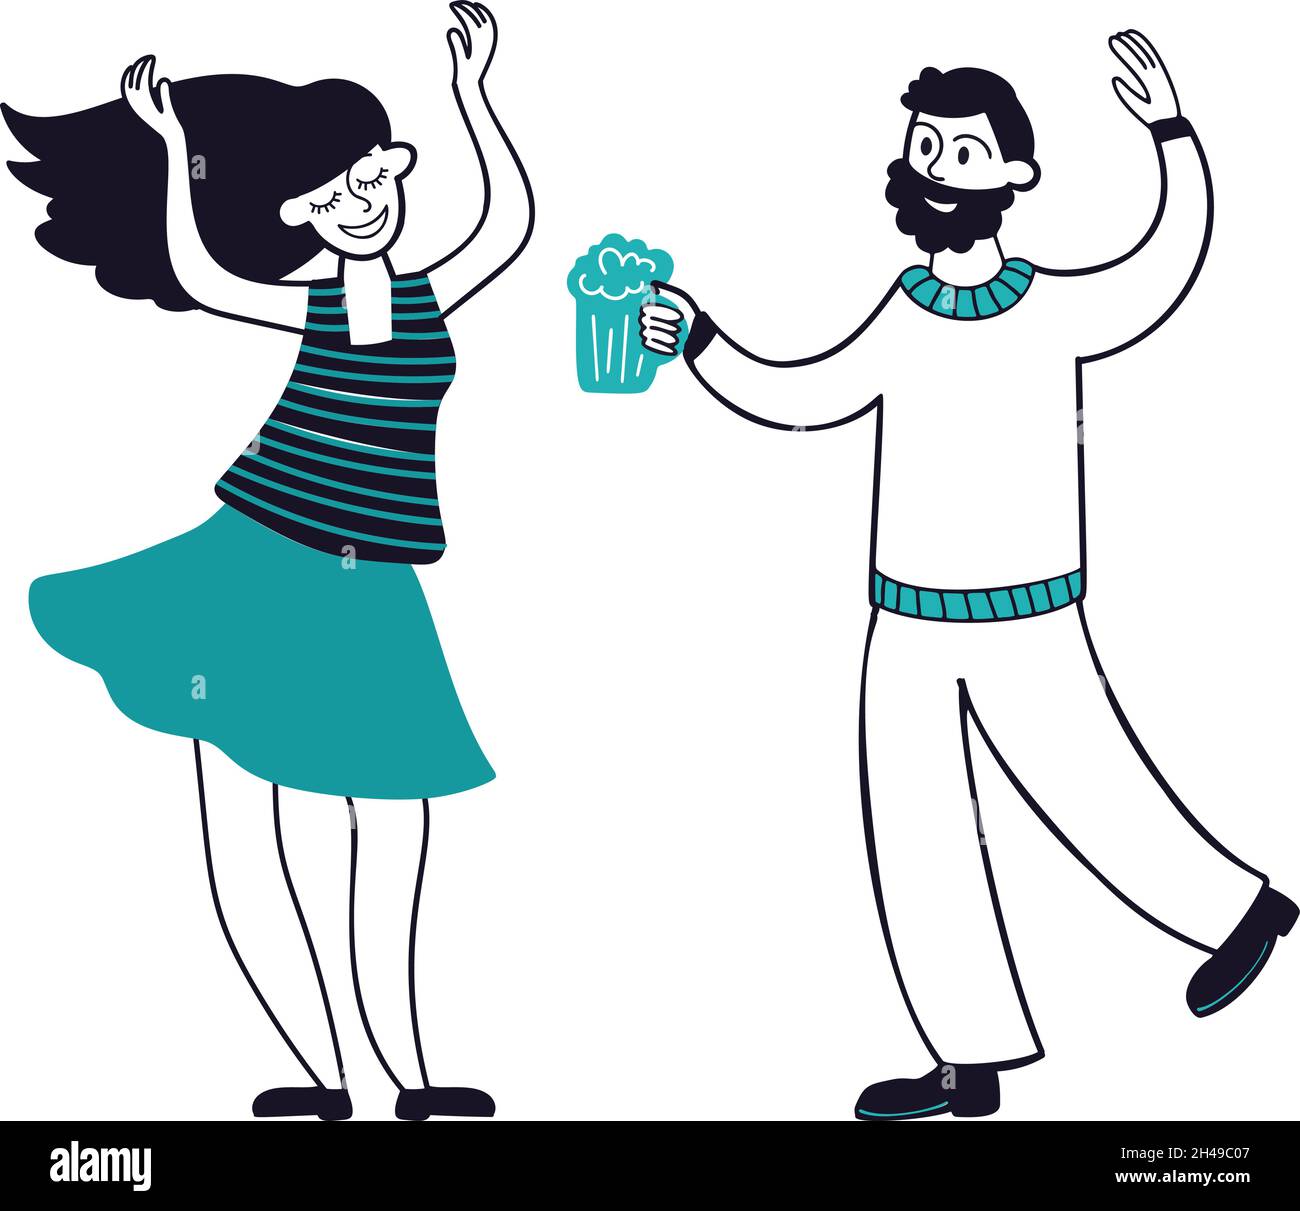 Homme heureux femme dansant et buvant.Buvez de la bière, des amis amusants ont passé du temps.Caractères vectoriels de couple plat isolés Illustration de Vecteur